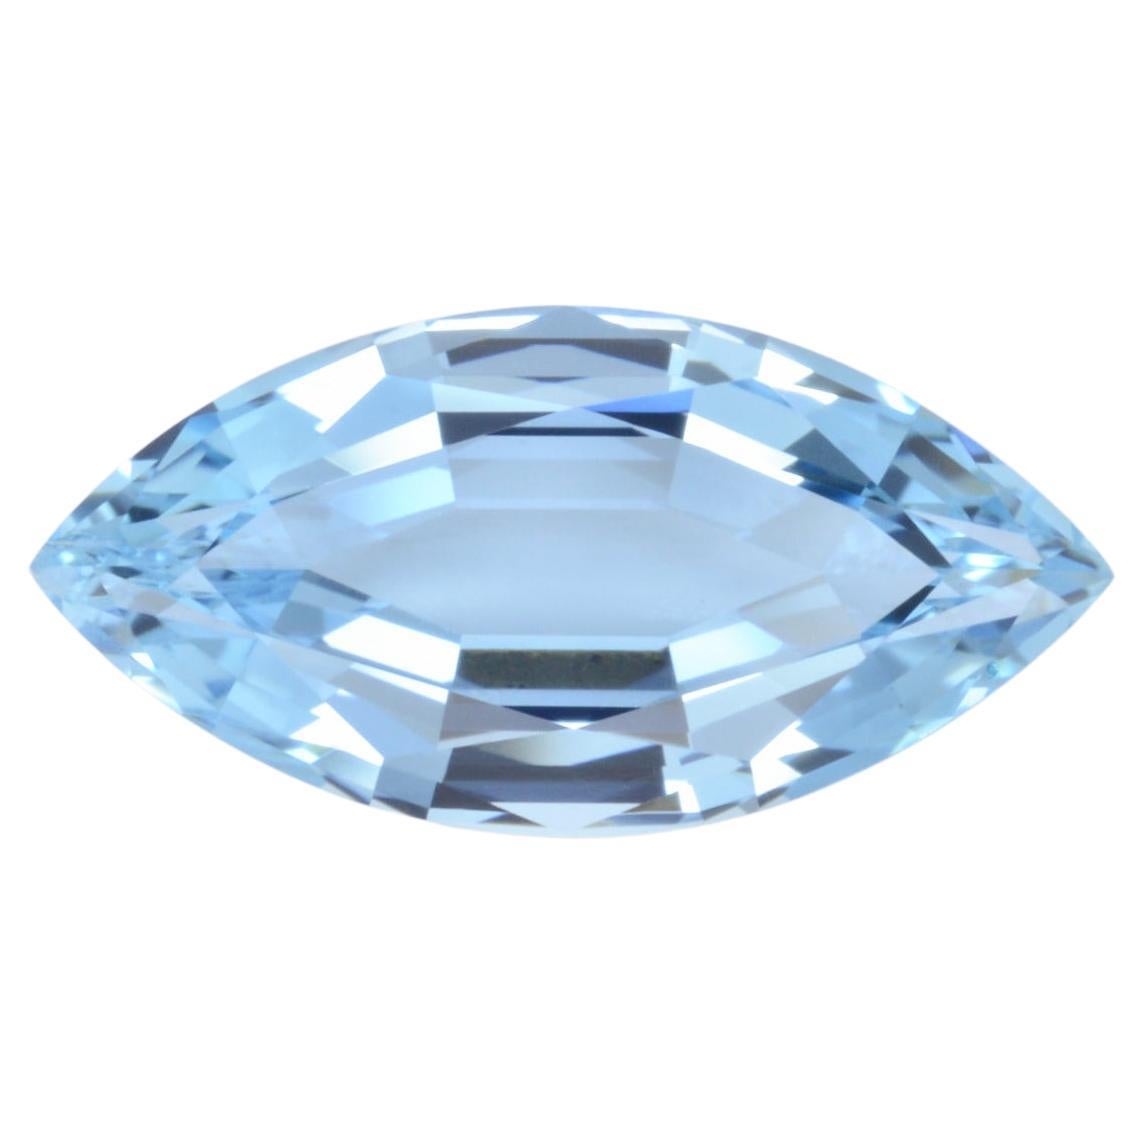 Aquamarine Ring Gem 5.52 Carat Unmounted Marquise Loose Gemstone